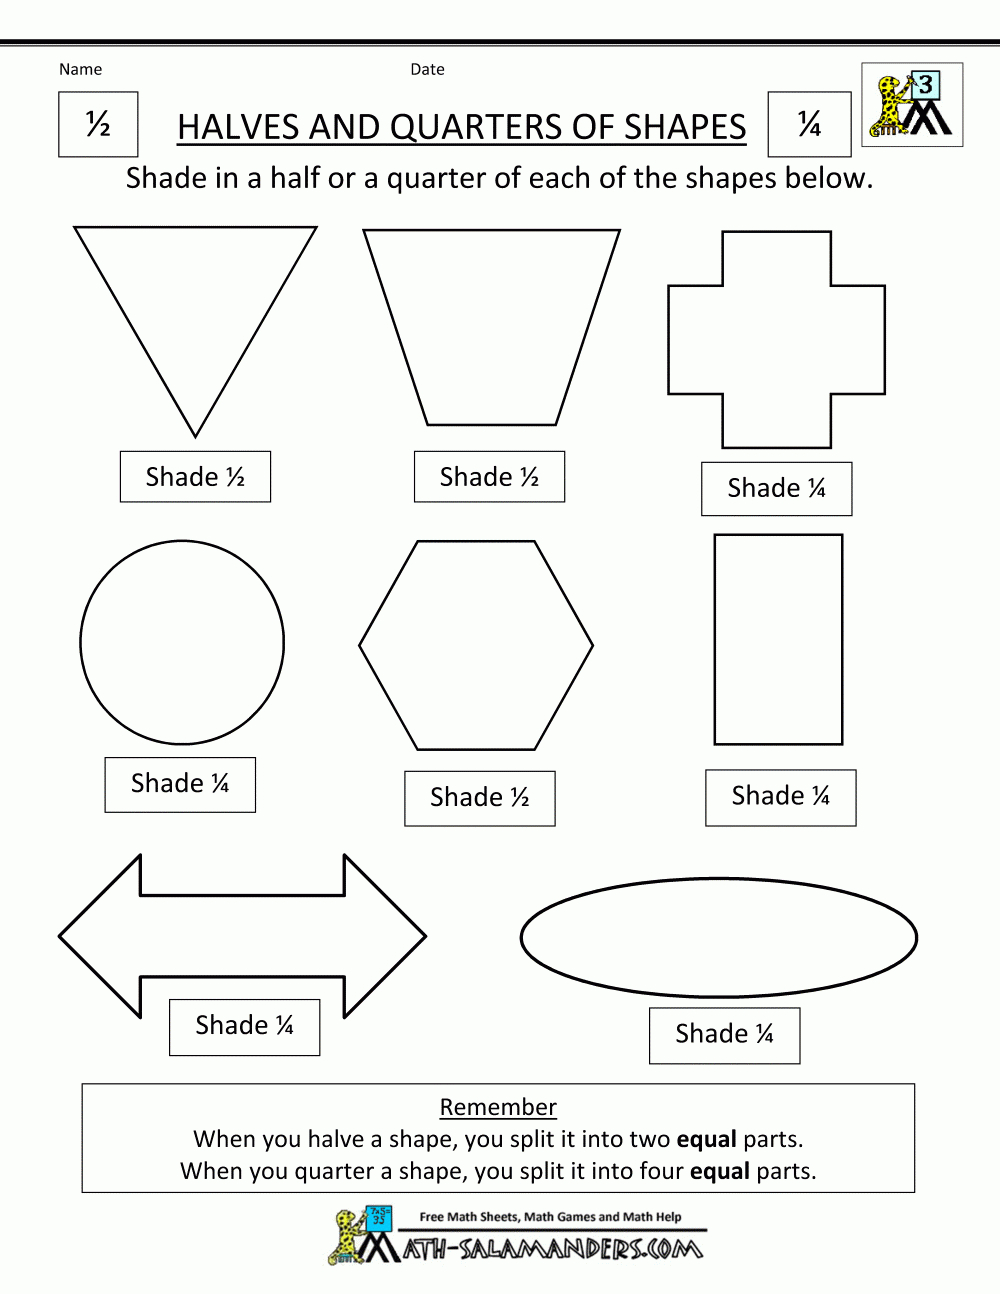 Fraction Shape Worksheets Also Dividing Shapes Into Equal Parts Worksheet